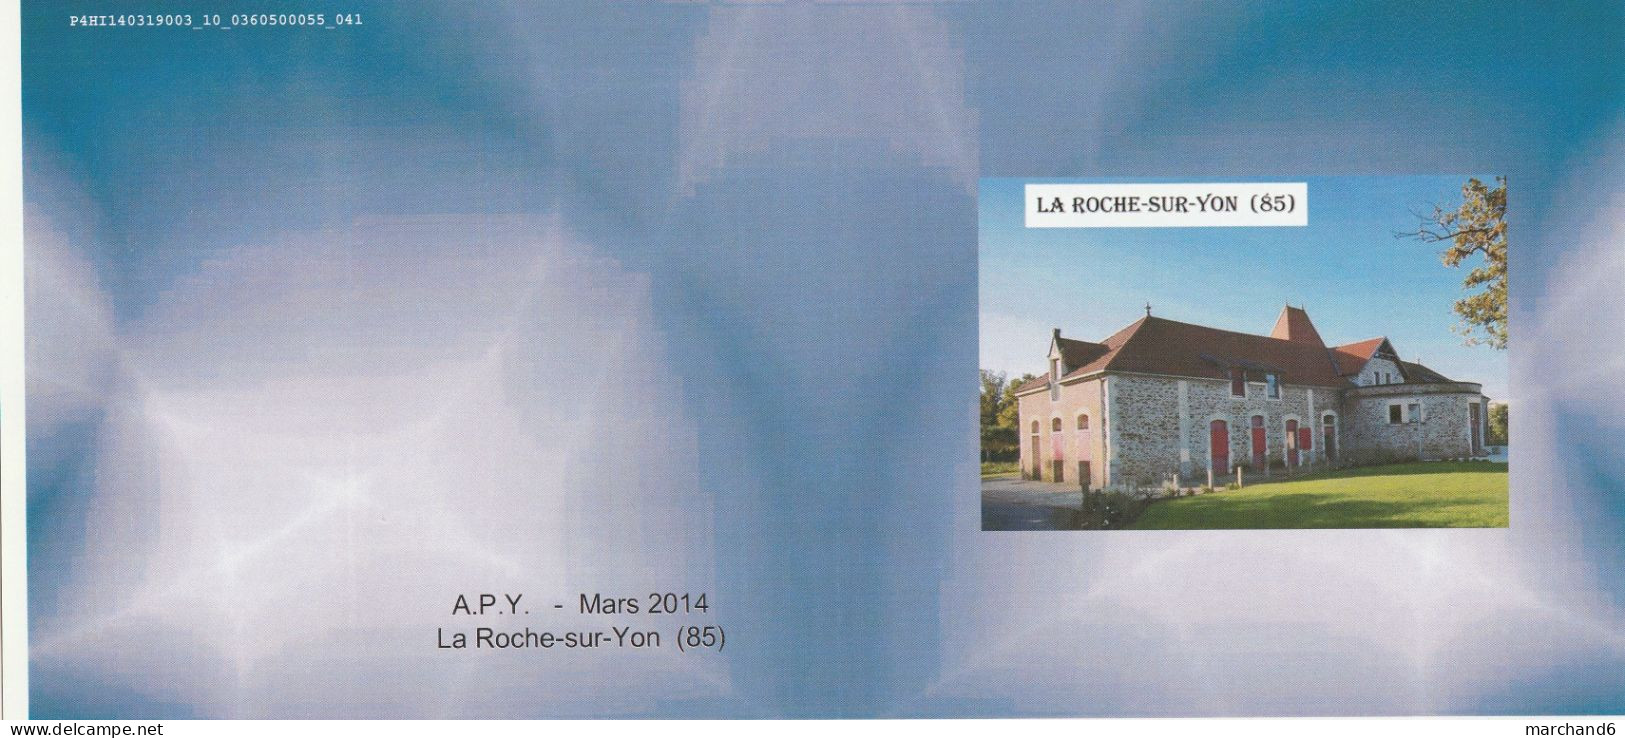 Feuillet Collector Les Anciennes écuries Des Oudairies Roche Sur Yon France 2014 IDT L P 20gr 4 Timbres Autoadhésifs N° - Collectors